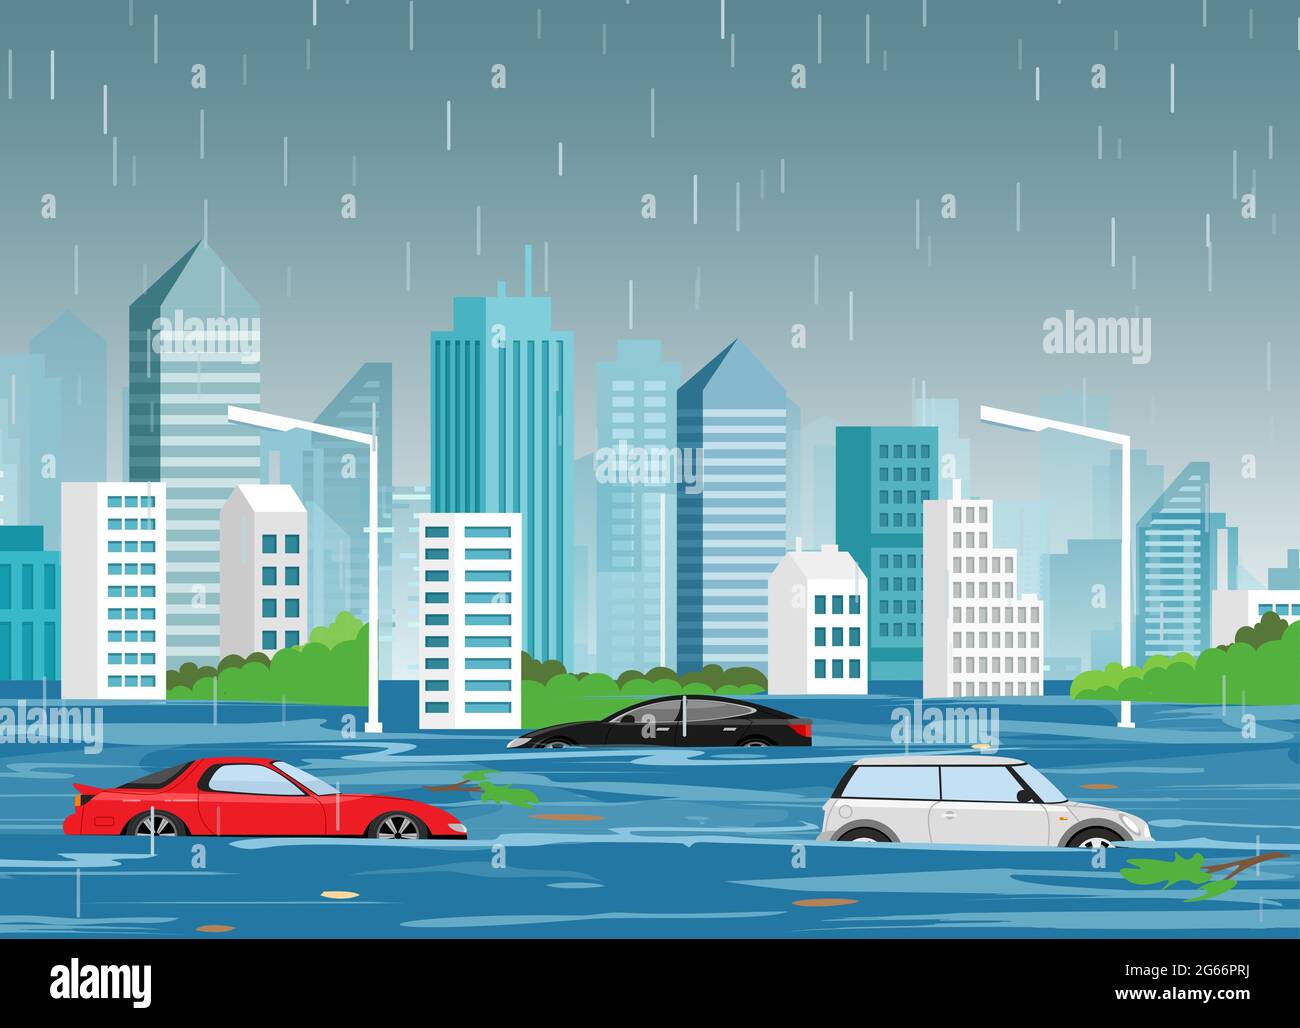 Illustrazione vettoriale del disastro naturale alluvionale nella città moderna cartoon con grattacieli e automobili in acqua. Tempesta in città, sfondo paesaggistico per Illustrazione Vettoriale